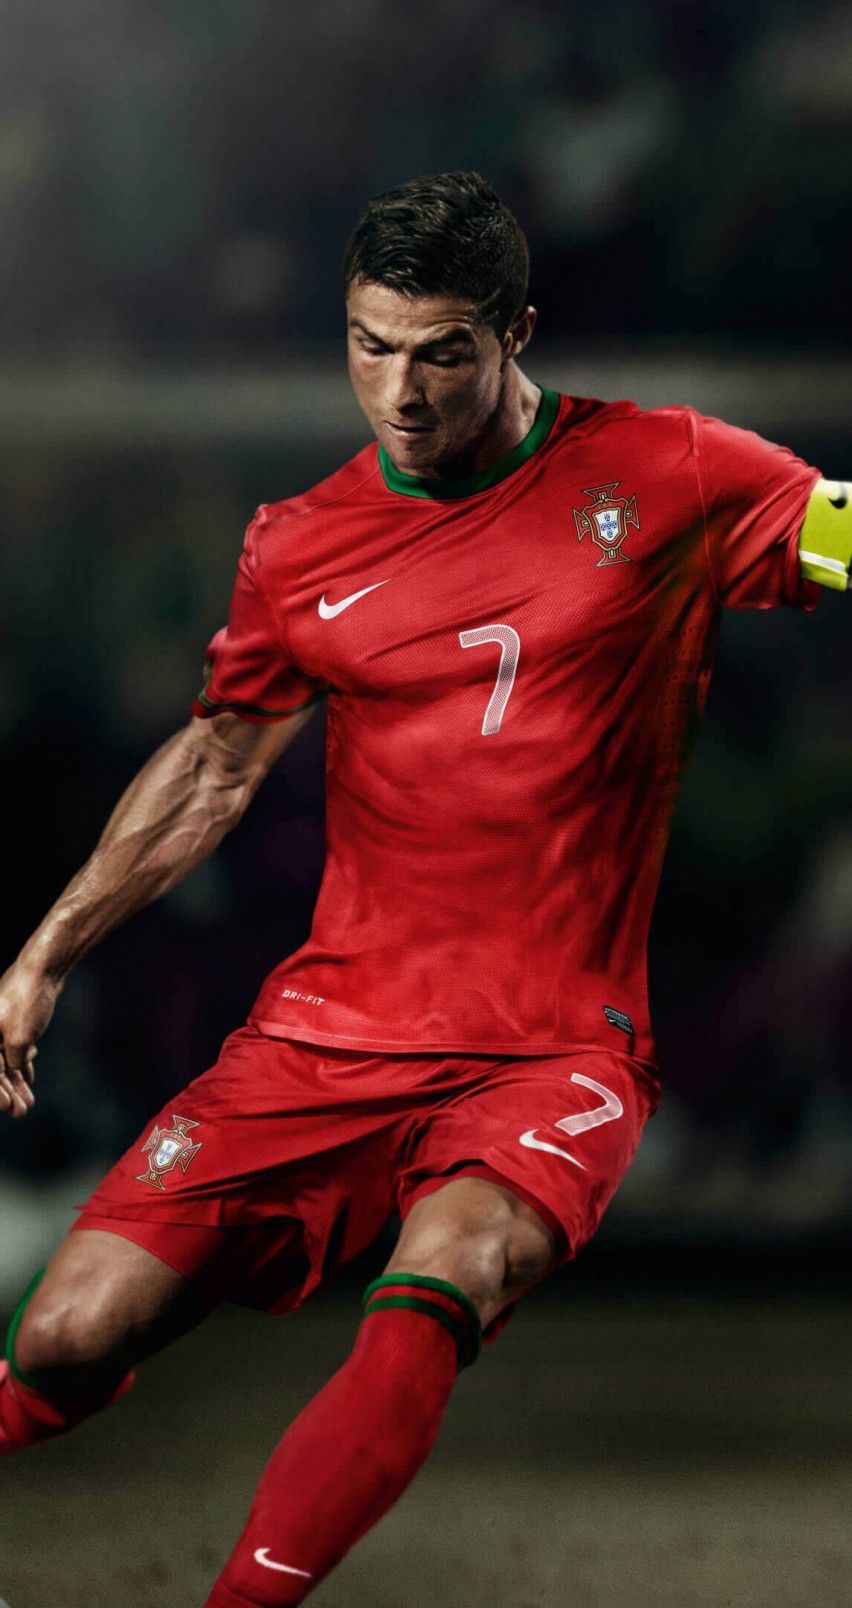 Download Cristiano Ronaldo In Portugal Jersey HD wallpaper for